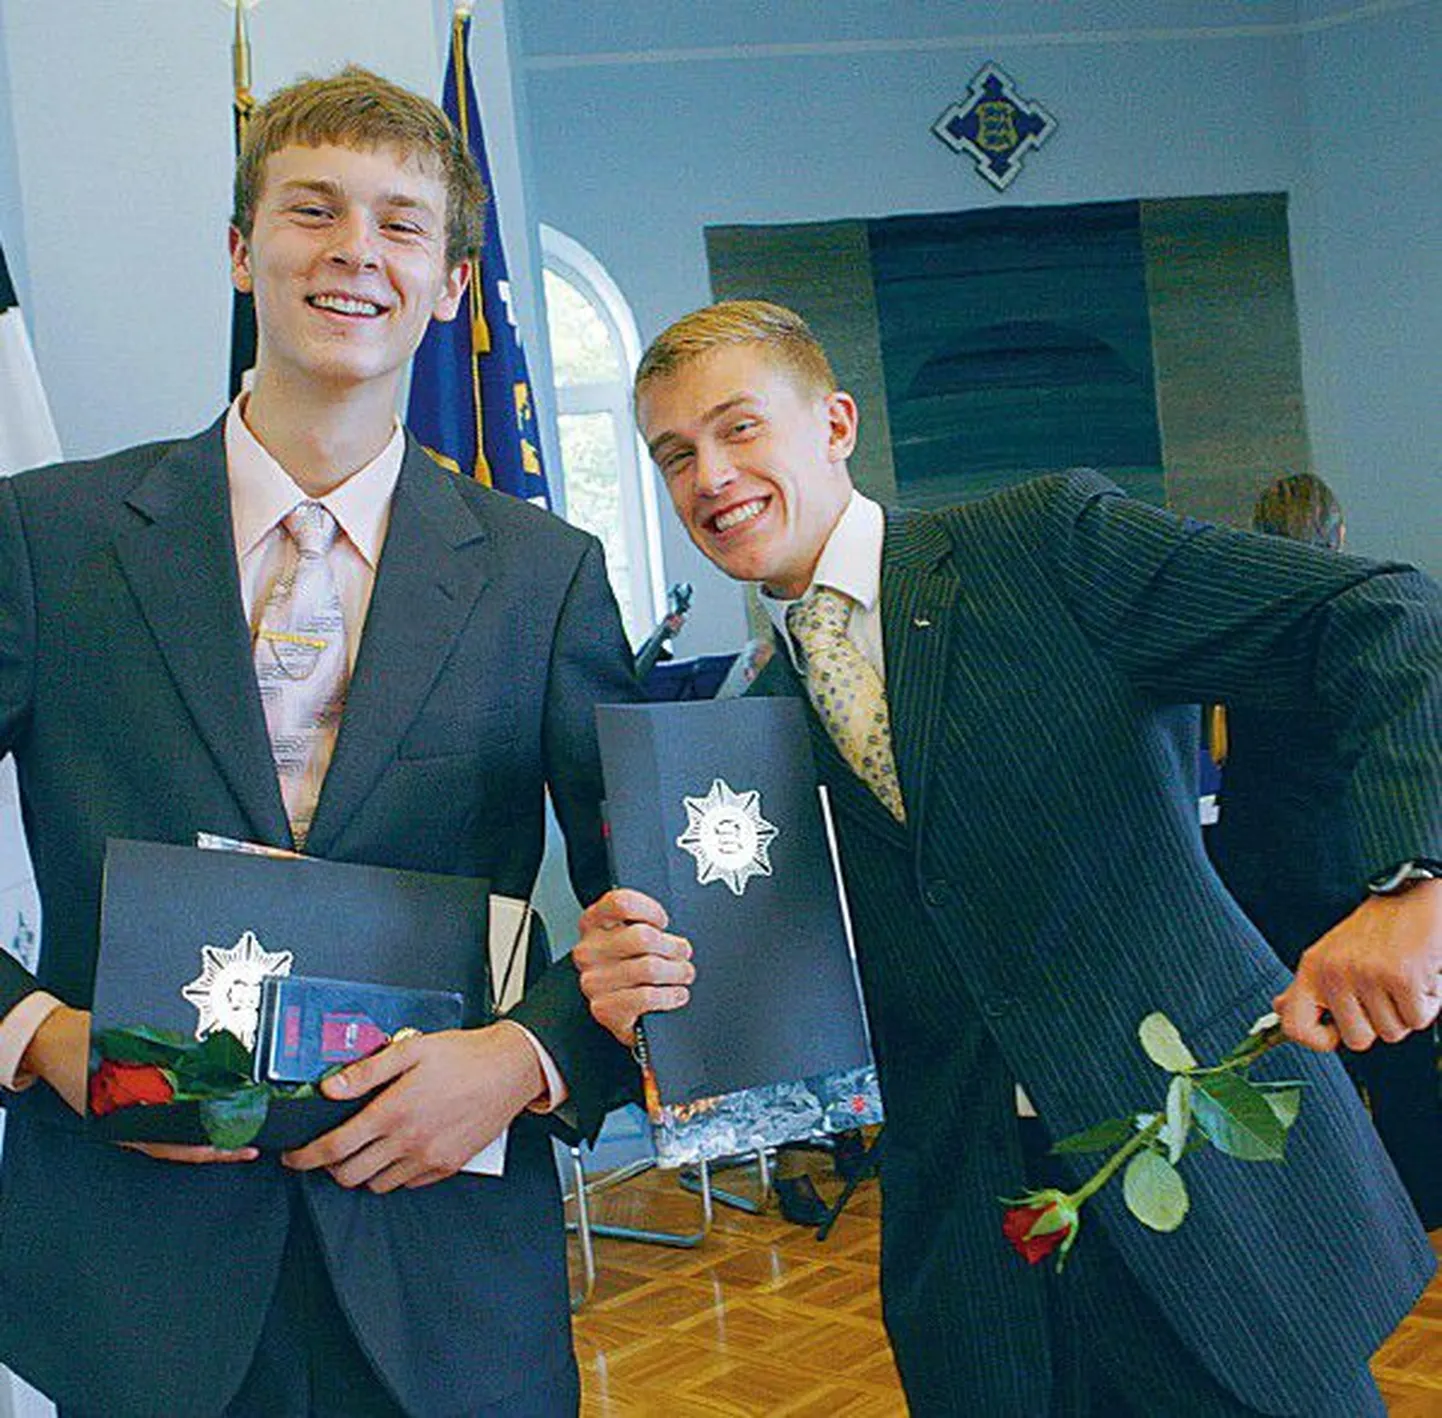 Kaks pisikest poissi uppumissurmast päästnud Aleksei Rožkov (vasakul) ja Mehis Kont rõõmustavad tunnustuse ja medali üle.